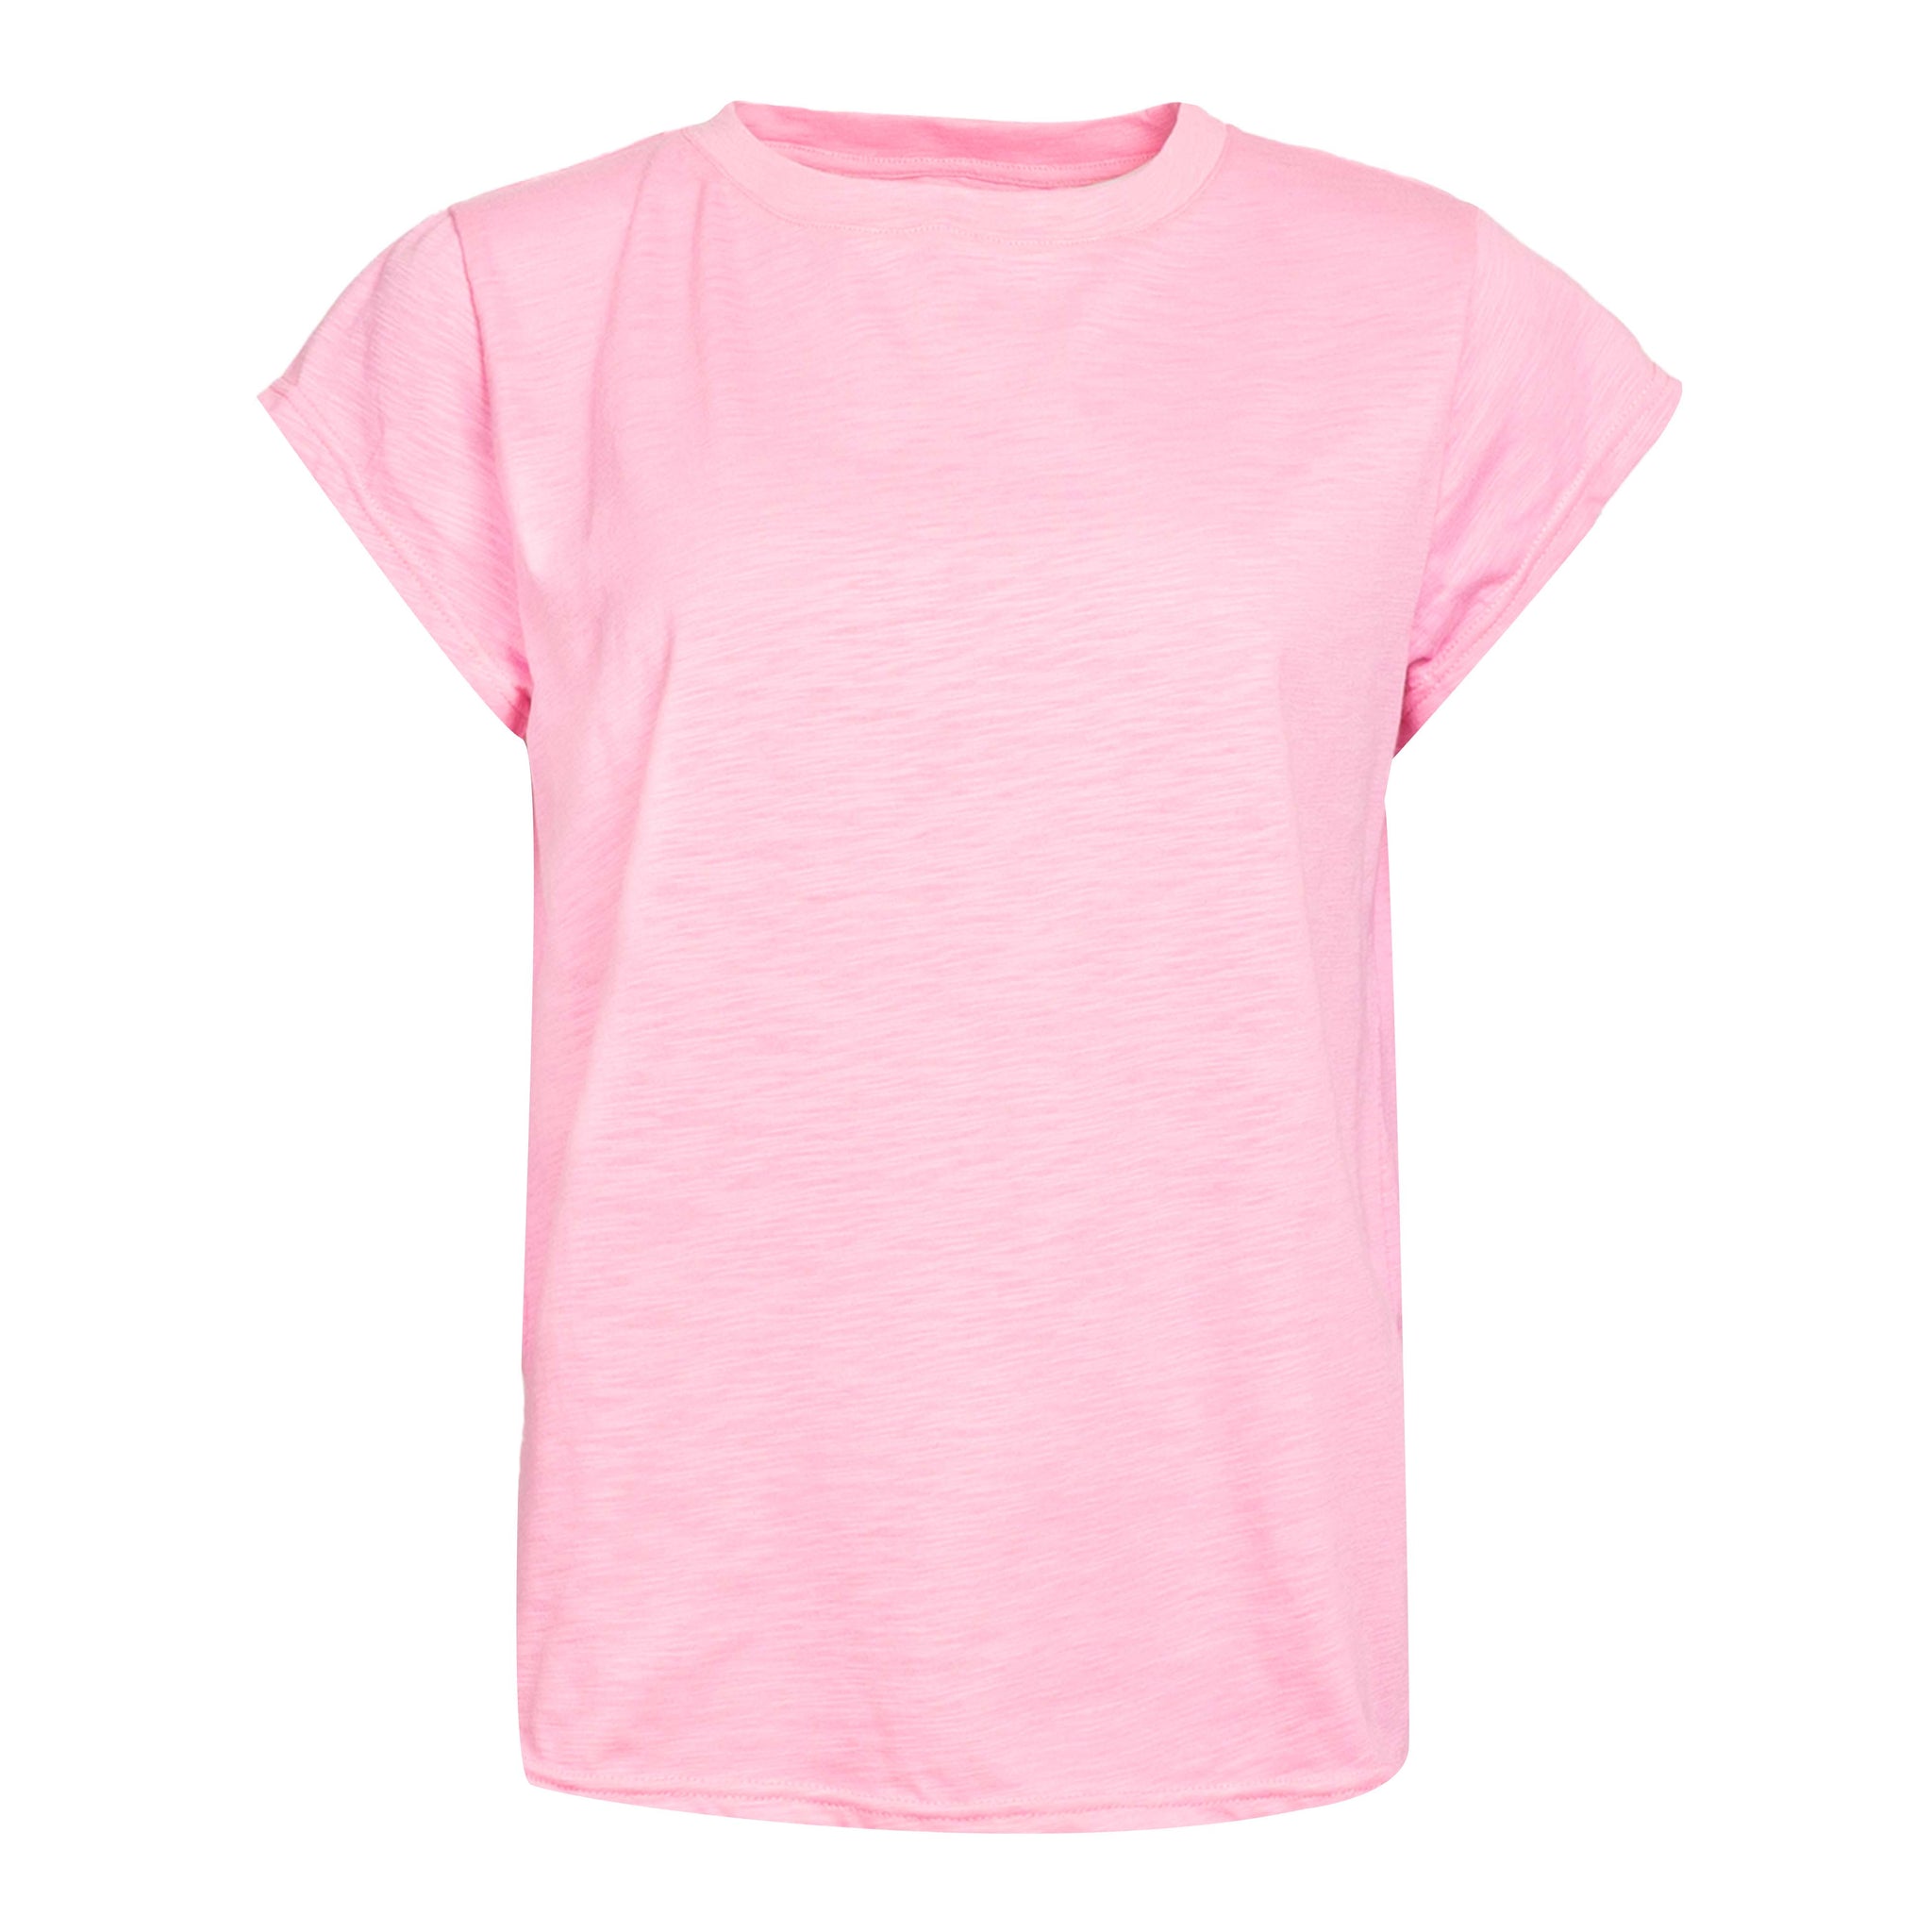 Liberté - Ulla SS T-shirt, 21469 - Bubblegum